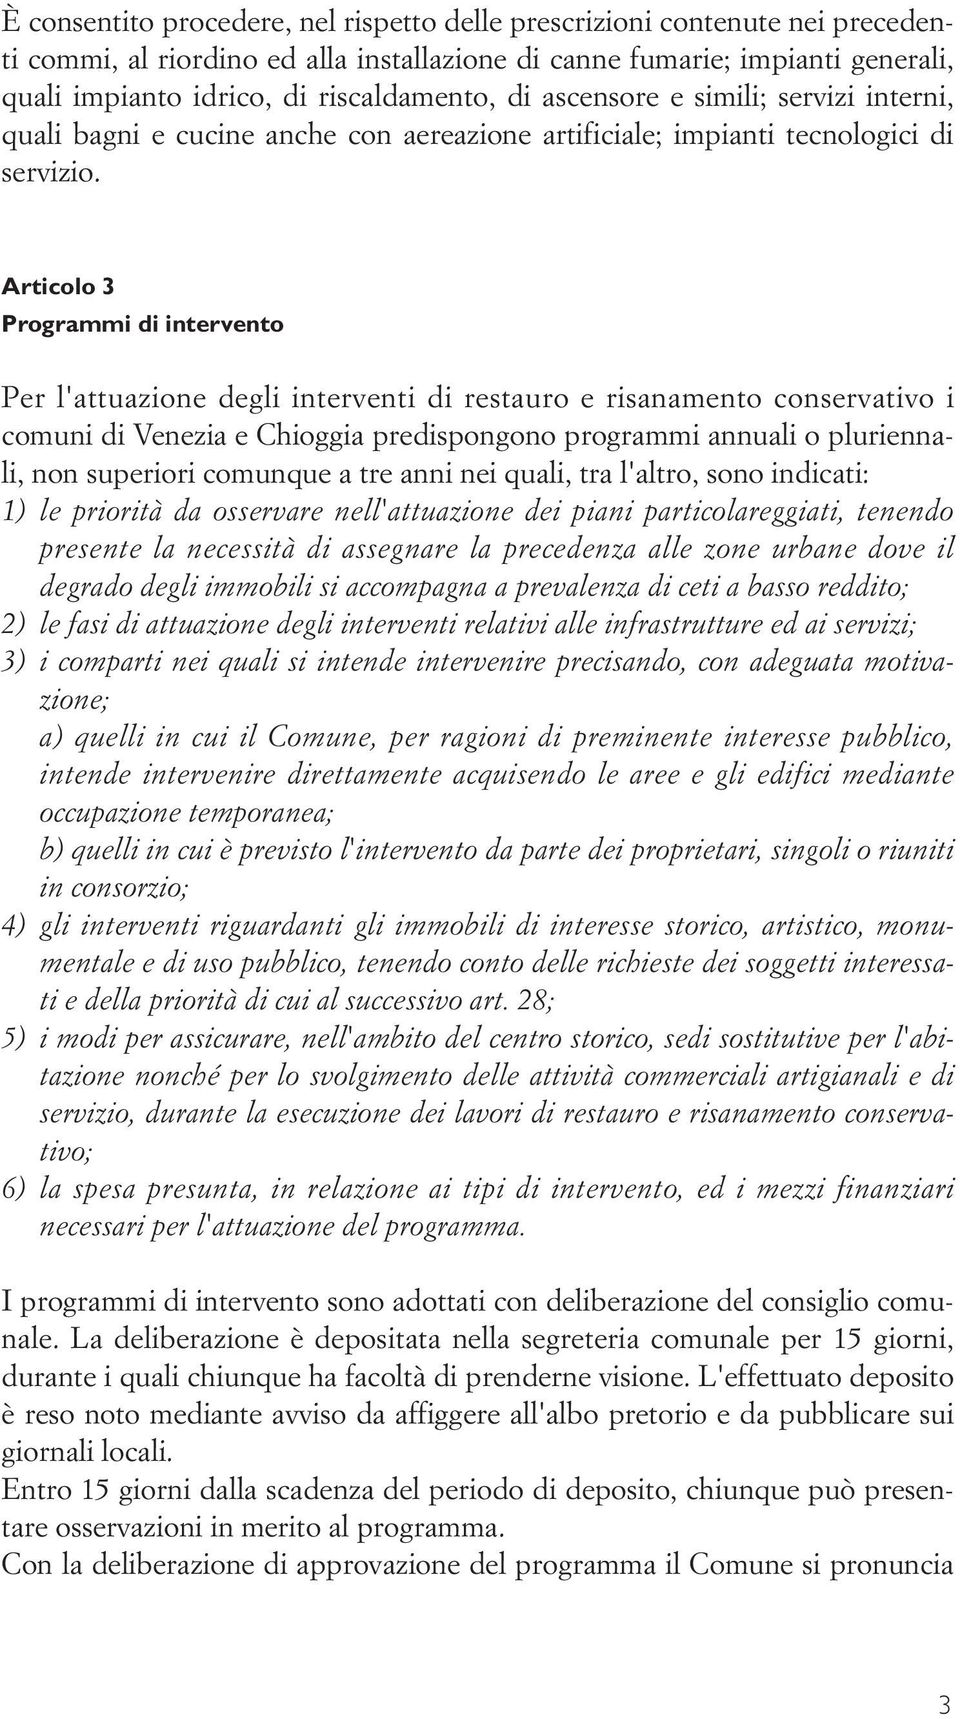 Articolo 3 Programmi di intervento Per l'attuazione degli interventi di restauro e risanamento conservativo i comuni di Venezia e Chioggia predispongono programmi annuali o pluriennali, non superiori